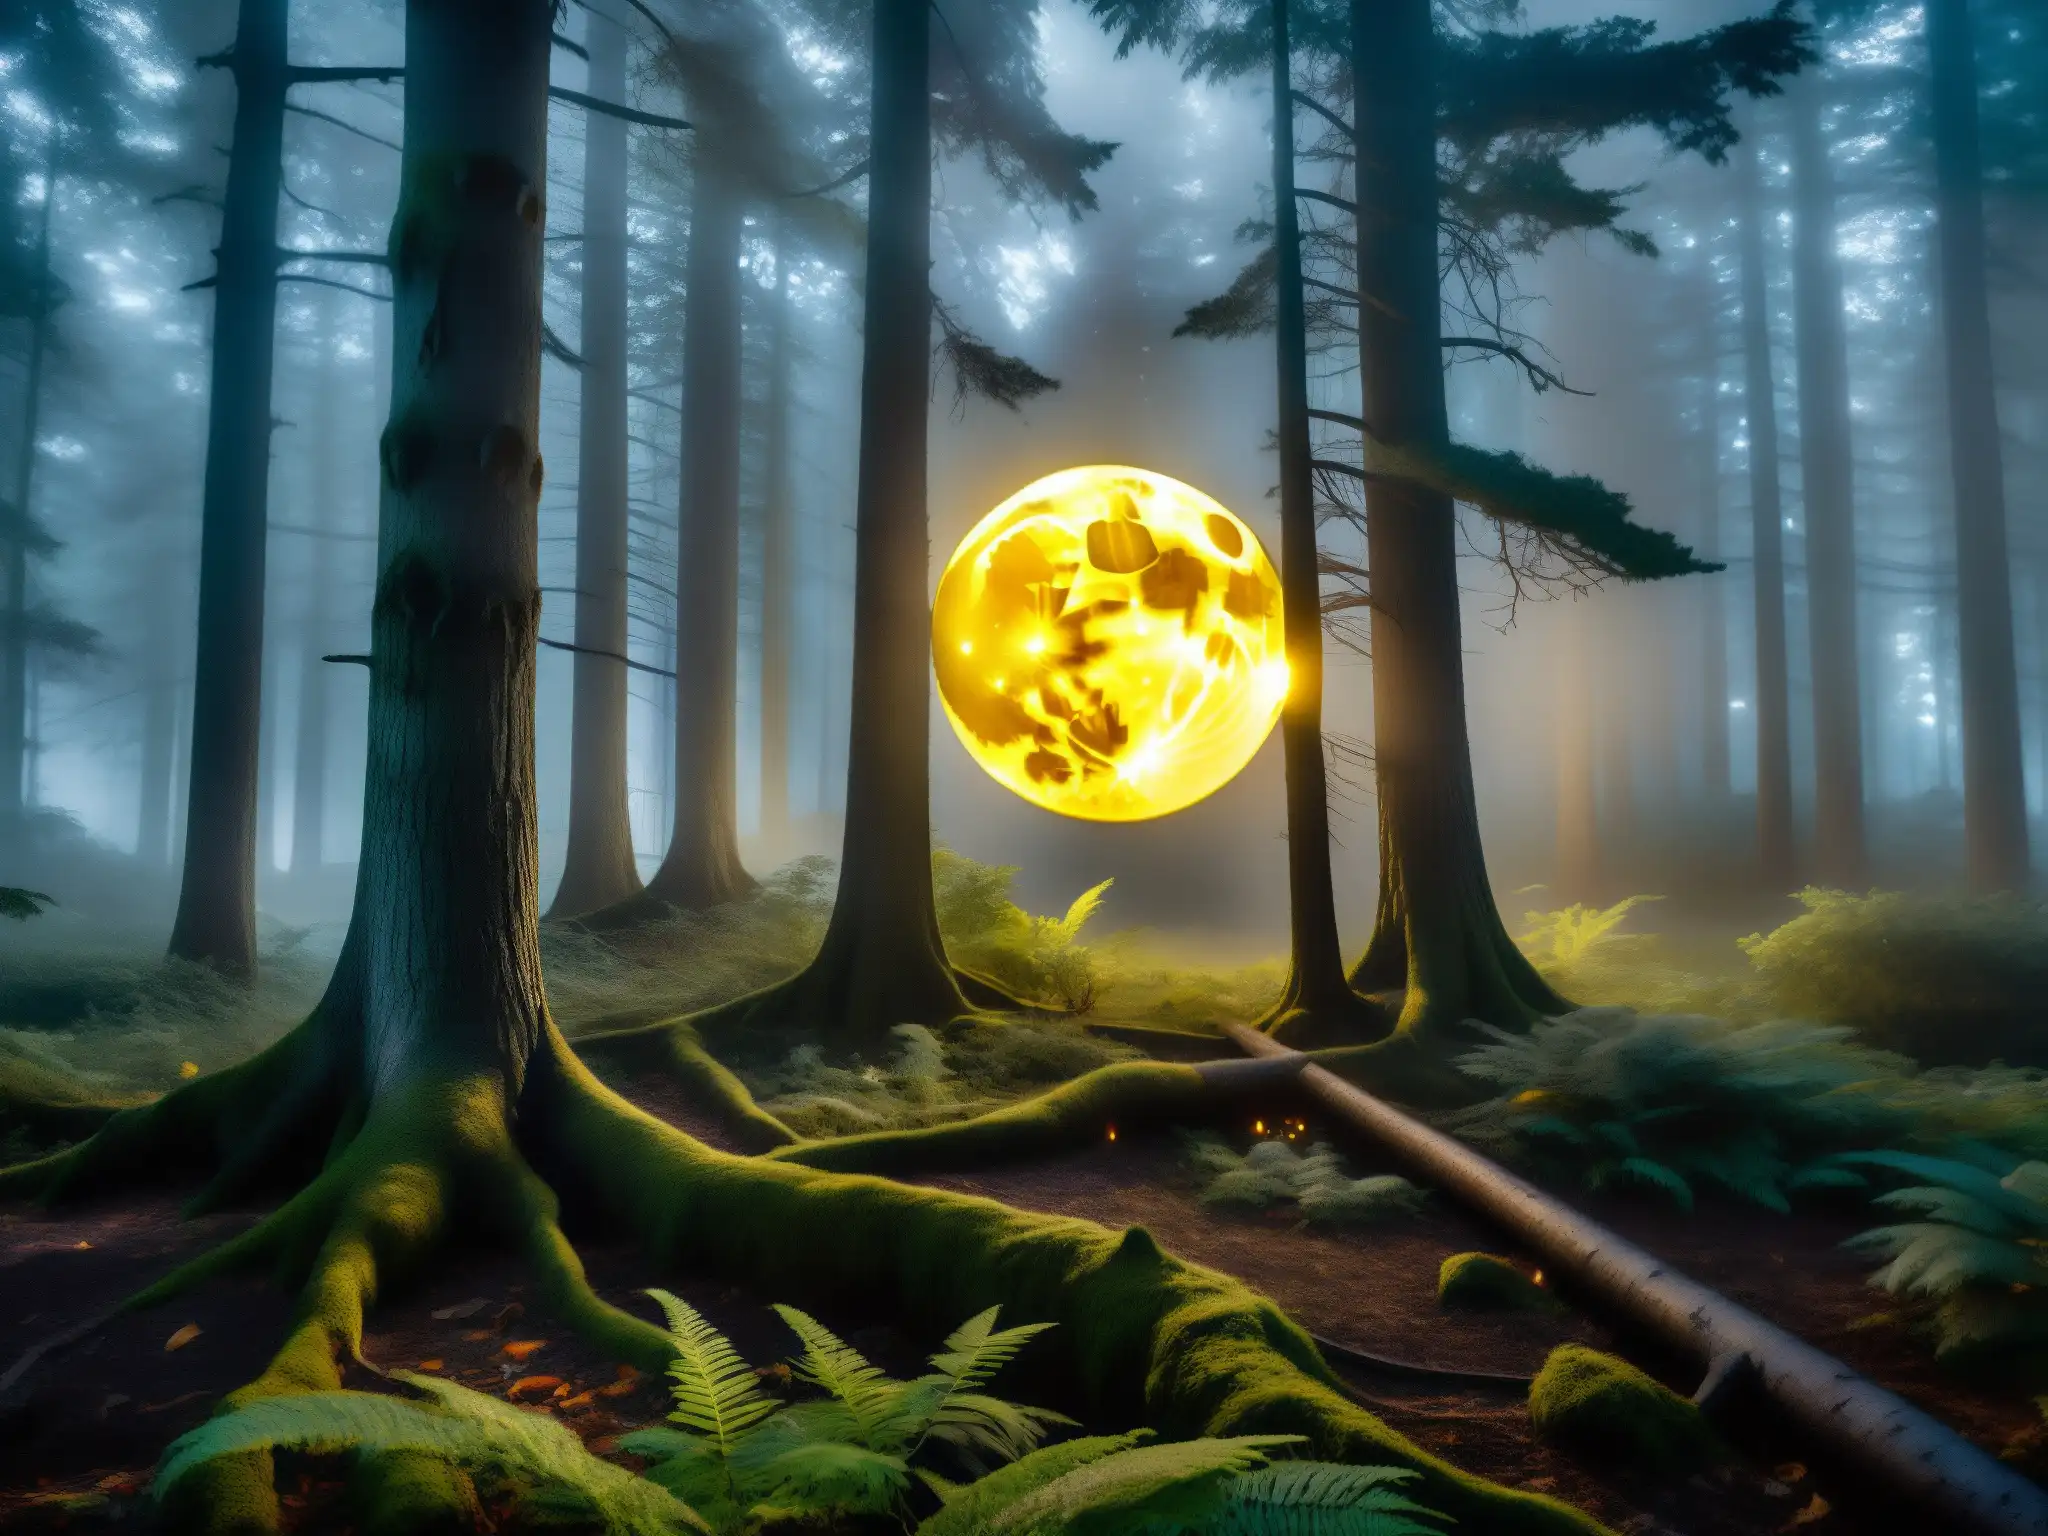 Imagen del origen mitológico del Chupacabras: ojos amarillos brillantes en un bosque nocturno y neblinoso, bajo la luz de la luna llena